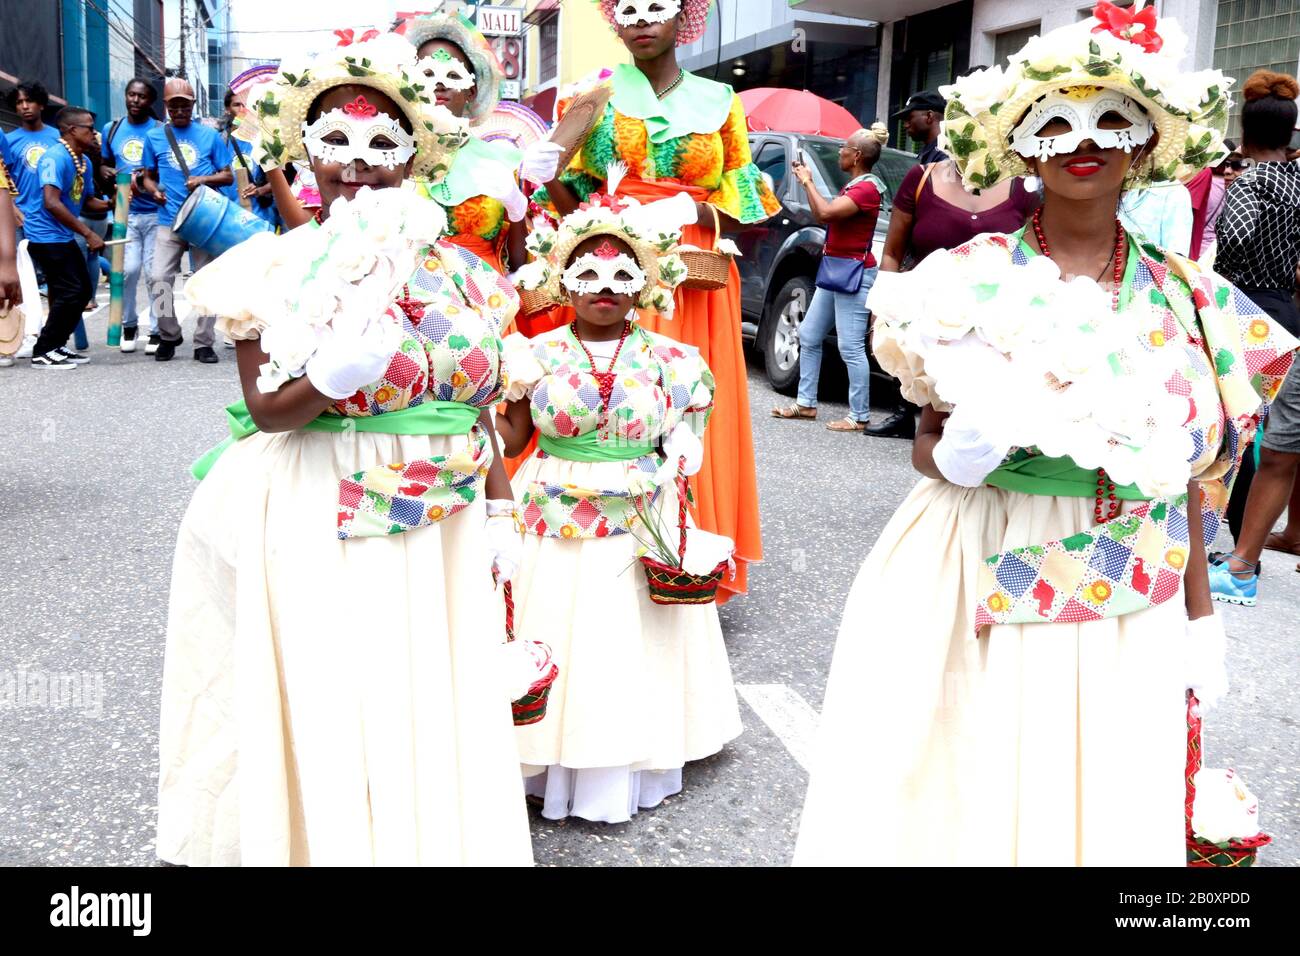 Hafen Von Spanien, Trinidad, TT. Februar 2020. Traditionelle Karnevalsfiguren kamen am Freitag, 21. Februar 2020 auf die Straßen von Port of Spain, um einen Mittagsumzug in einer von vielen Veranstaltungen zu feiern, die zum Karneval führten, der am 24. Und 25. Stattfinden wird. Februar 2020. Kredit: G. Ronald Lopez/ZUMA Wire/Alamy Live News Stockfoto